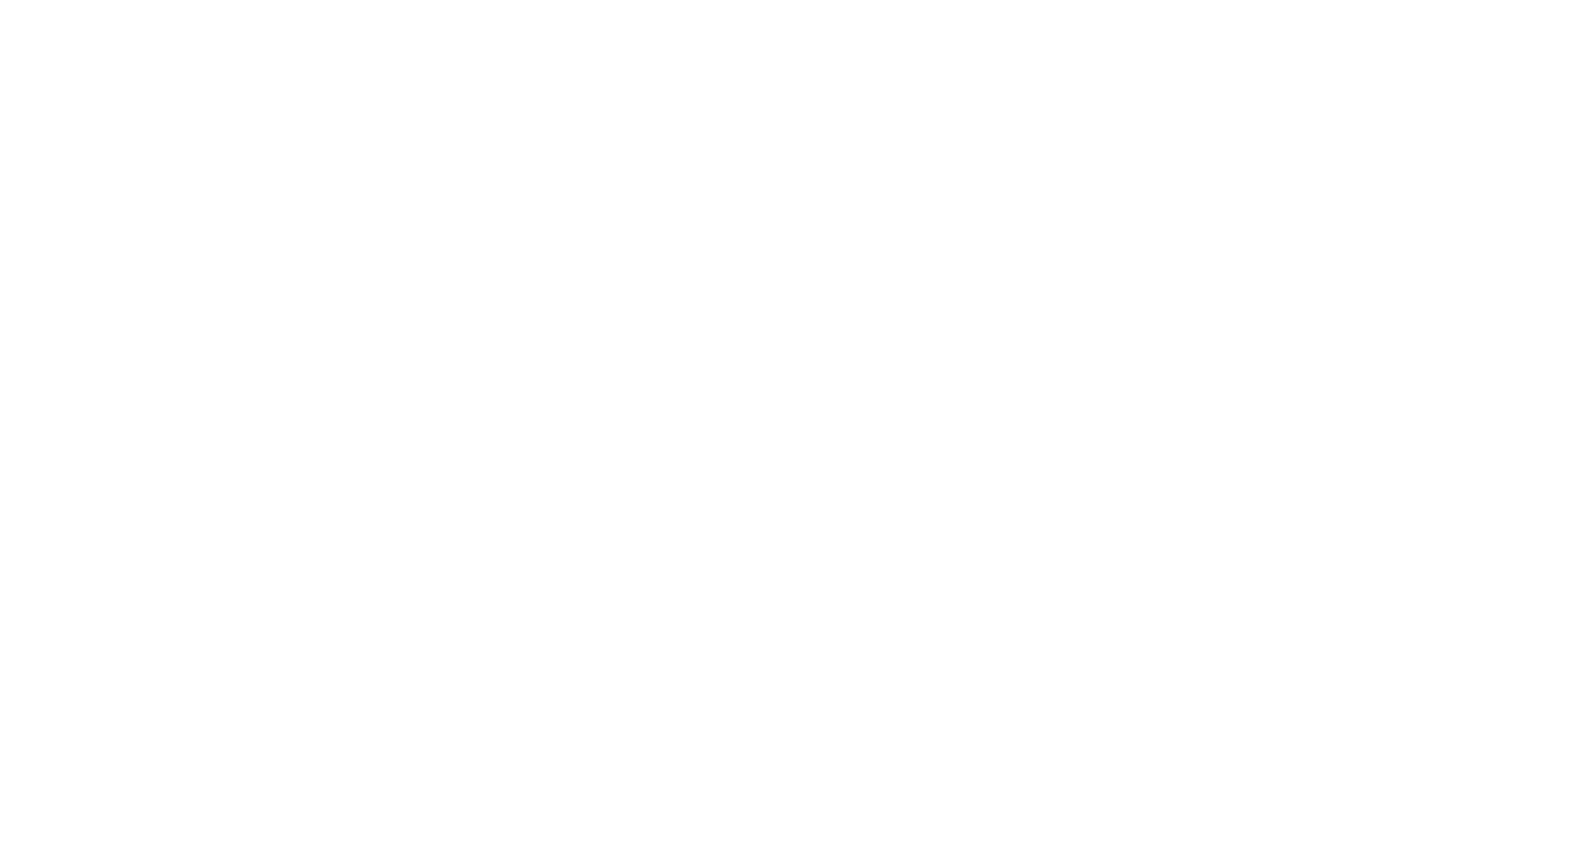 Owens & Minor

 logo pour fonds sombres (PNG transparent)